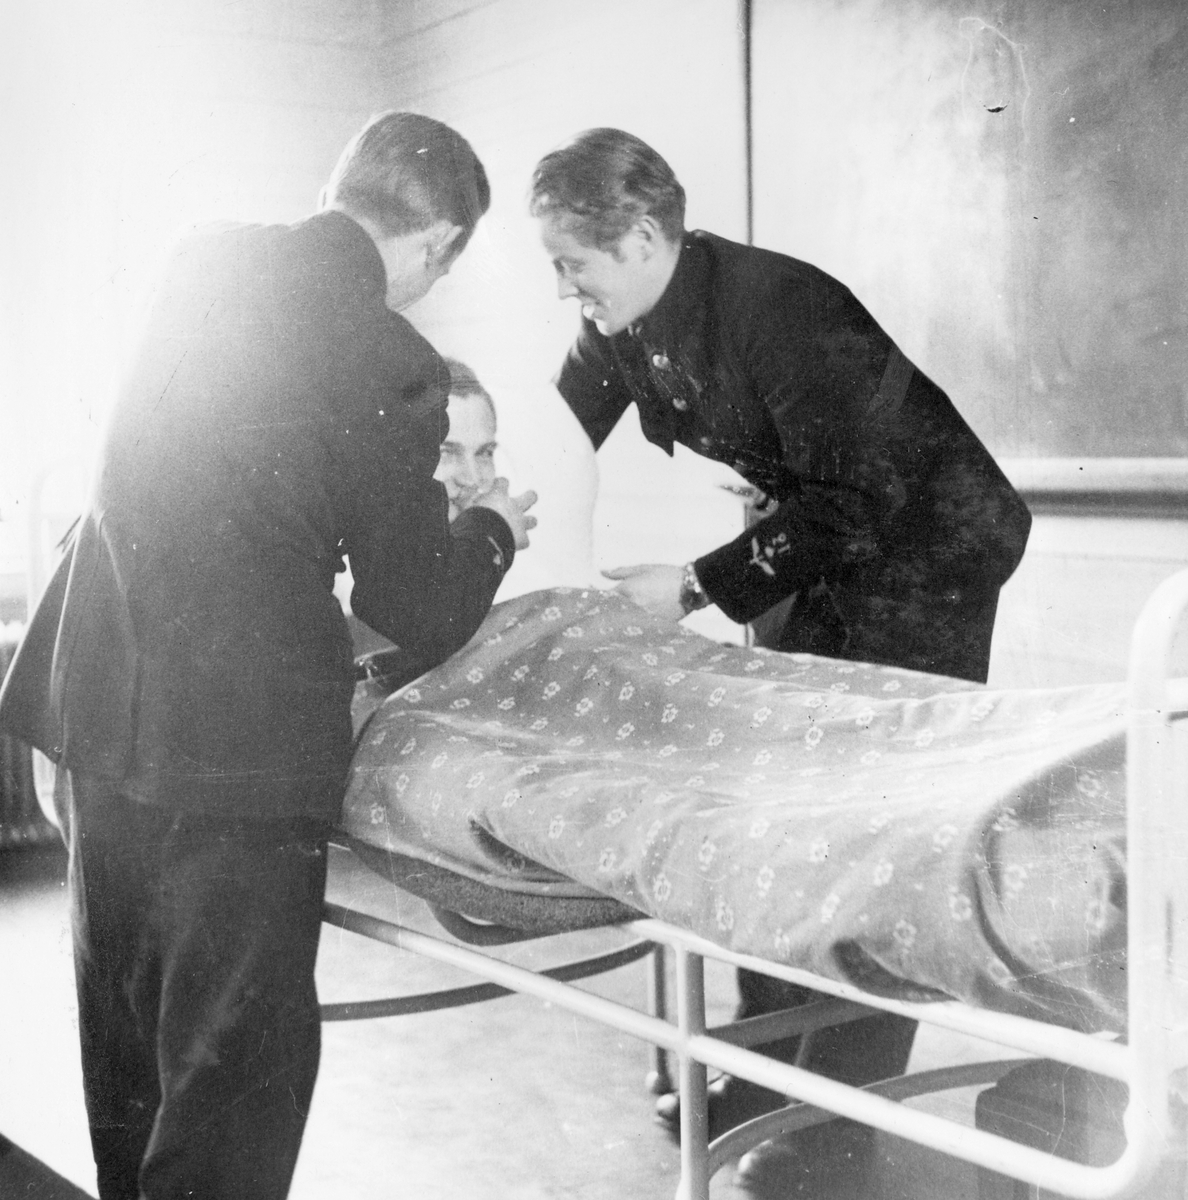 Två soldater ger en man i en sjuksäng något att dricka under sjukvårdskurs på F 11 Södermanlands flygflottilj, 1945.

Ur fotoalbum "Sjukvårdsskolan 15/1-15/3 1945" från F 11.